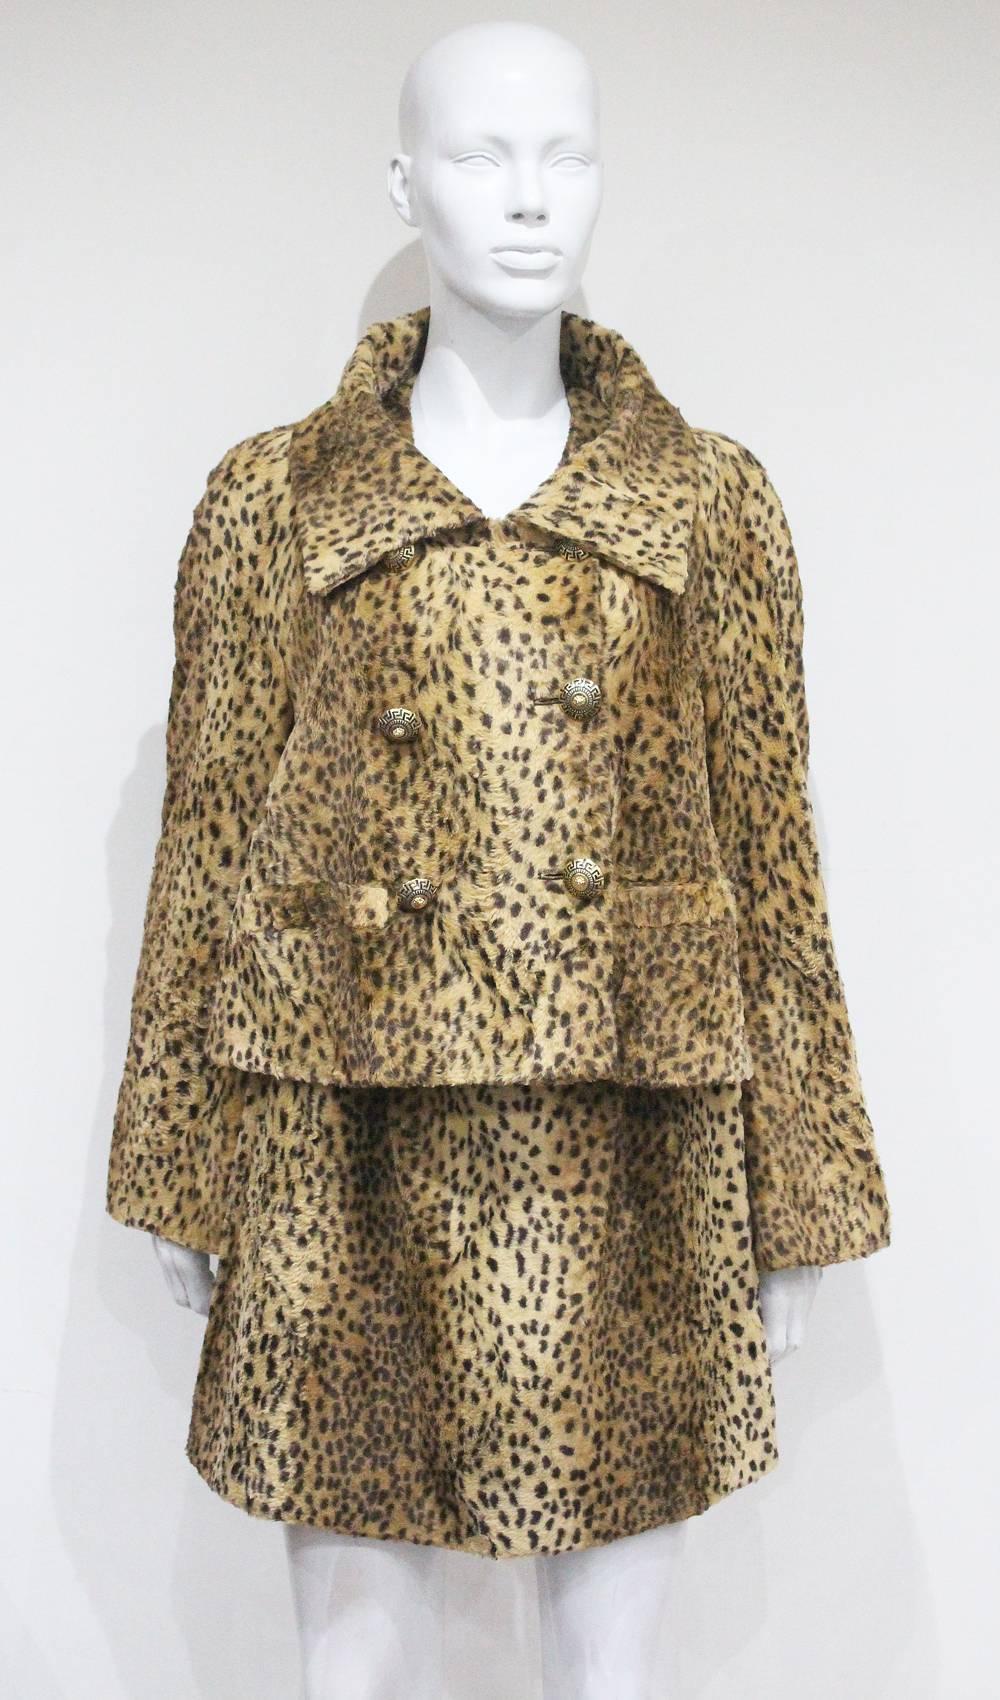 Ensemble veste et robe de Gianni Versace des années 1990, réalisé pour la ligne 